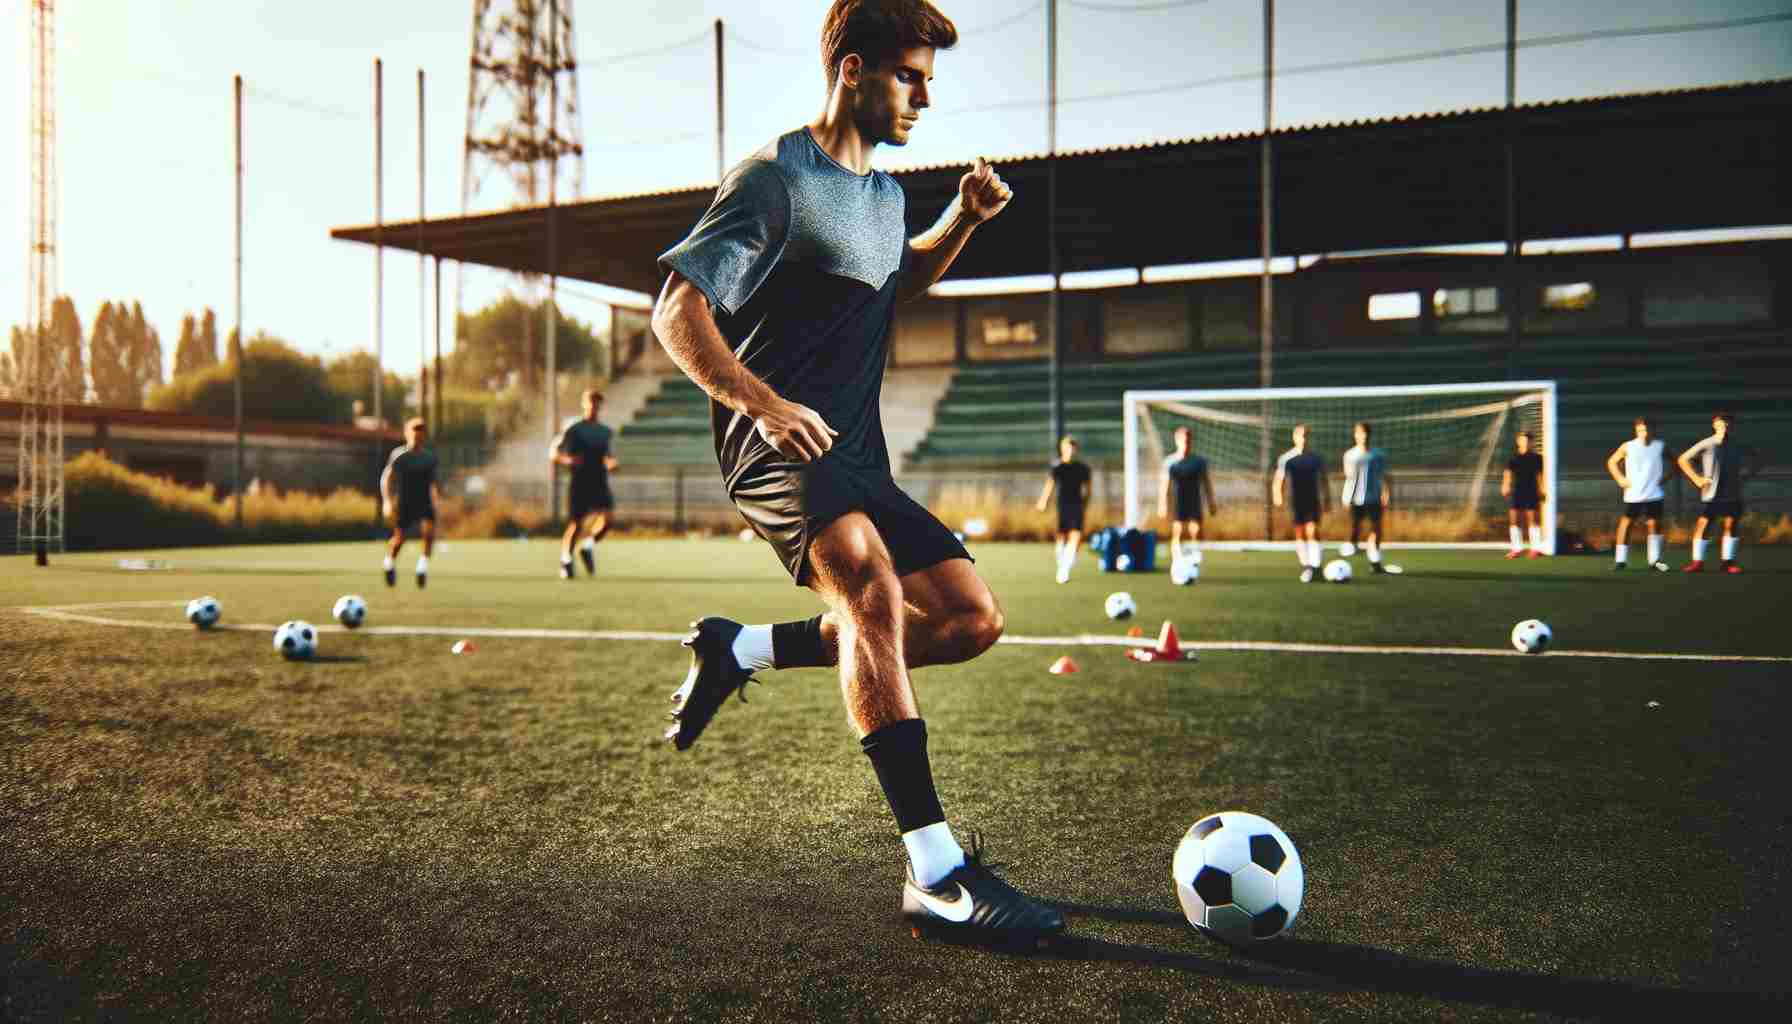 egy kép egy sportolóról, aki egy futball edzésen gyakorol. A jelenetnek meg kell ragadnia a sportoló dinamikus mozgását, bemutatva a